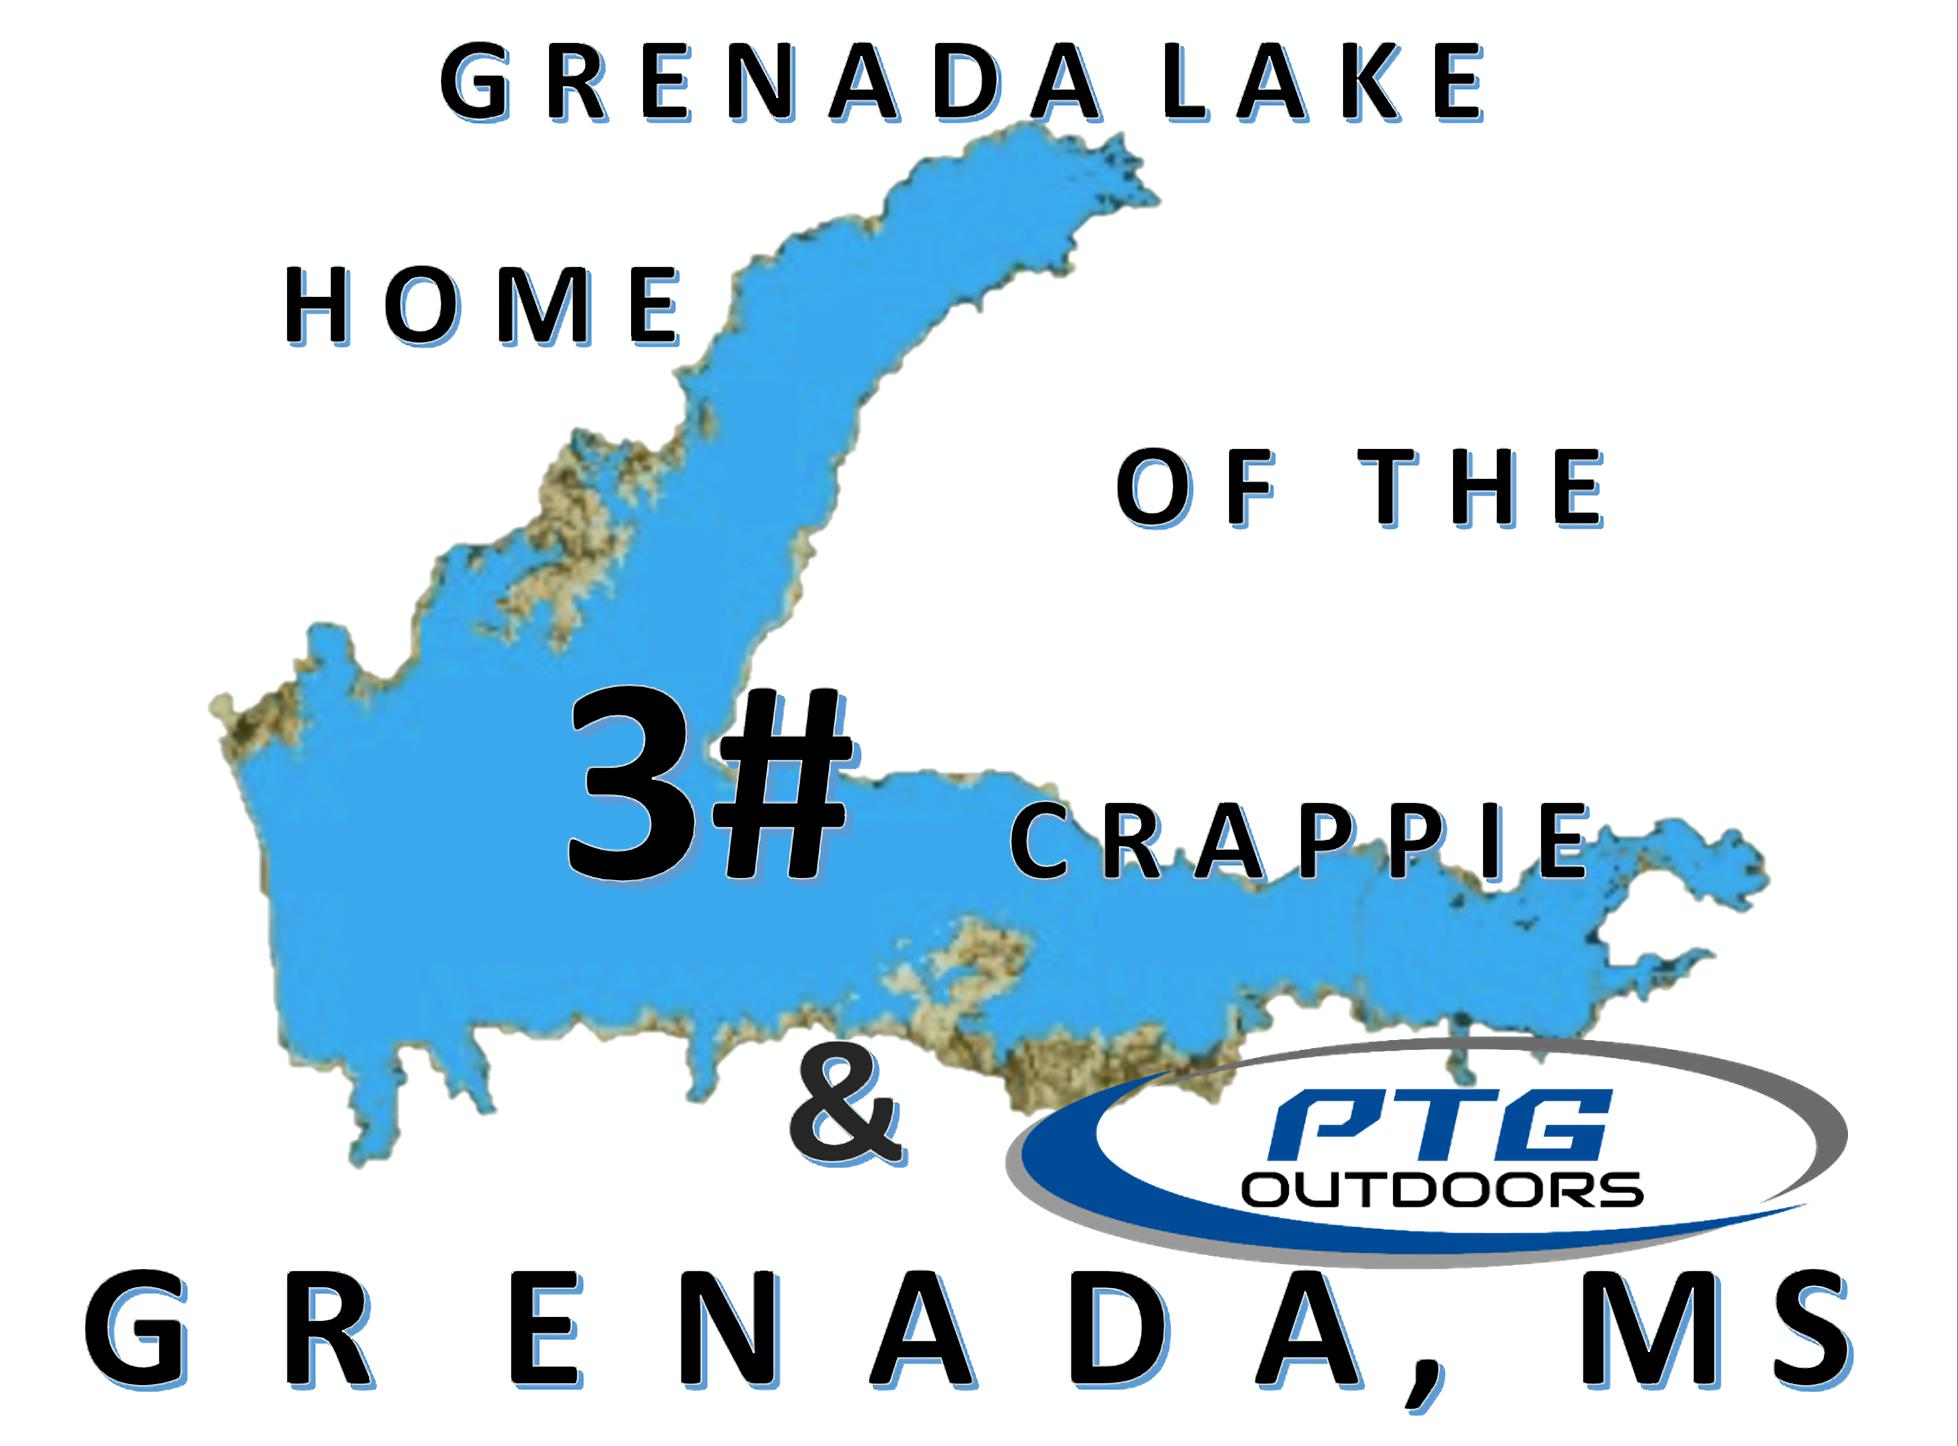 Grenada Lake Fishing Map